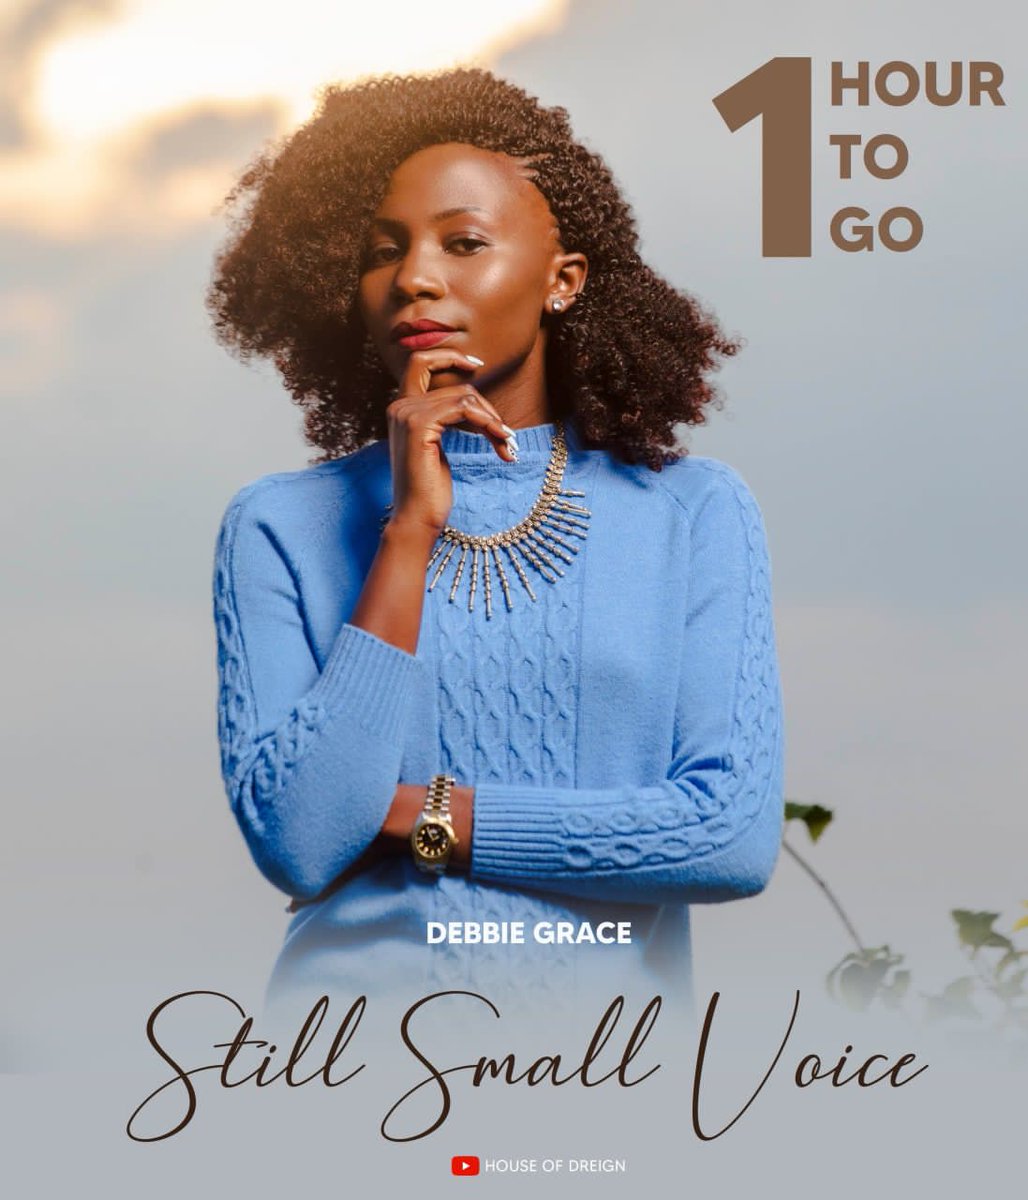 💃🏾 1 hour to go…

*Still Small Voice Ft Debbie Grace | Official Premiere*

youtu.be/S6ZH6jt5TSM

#Stillsmallvoice #HouseofDreign